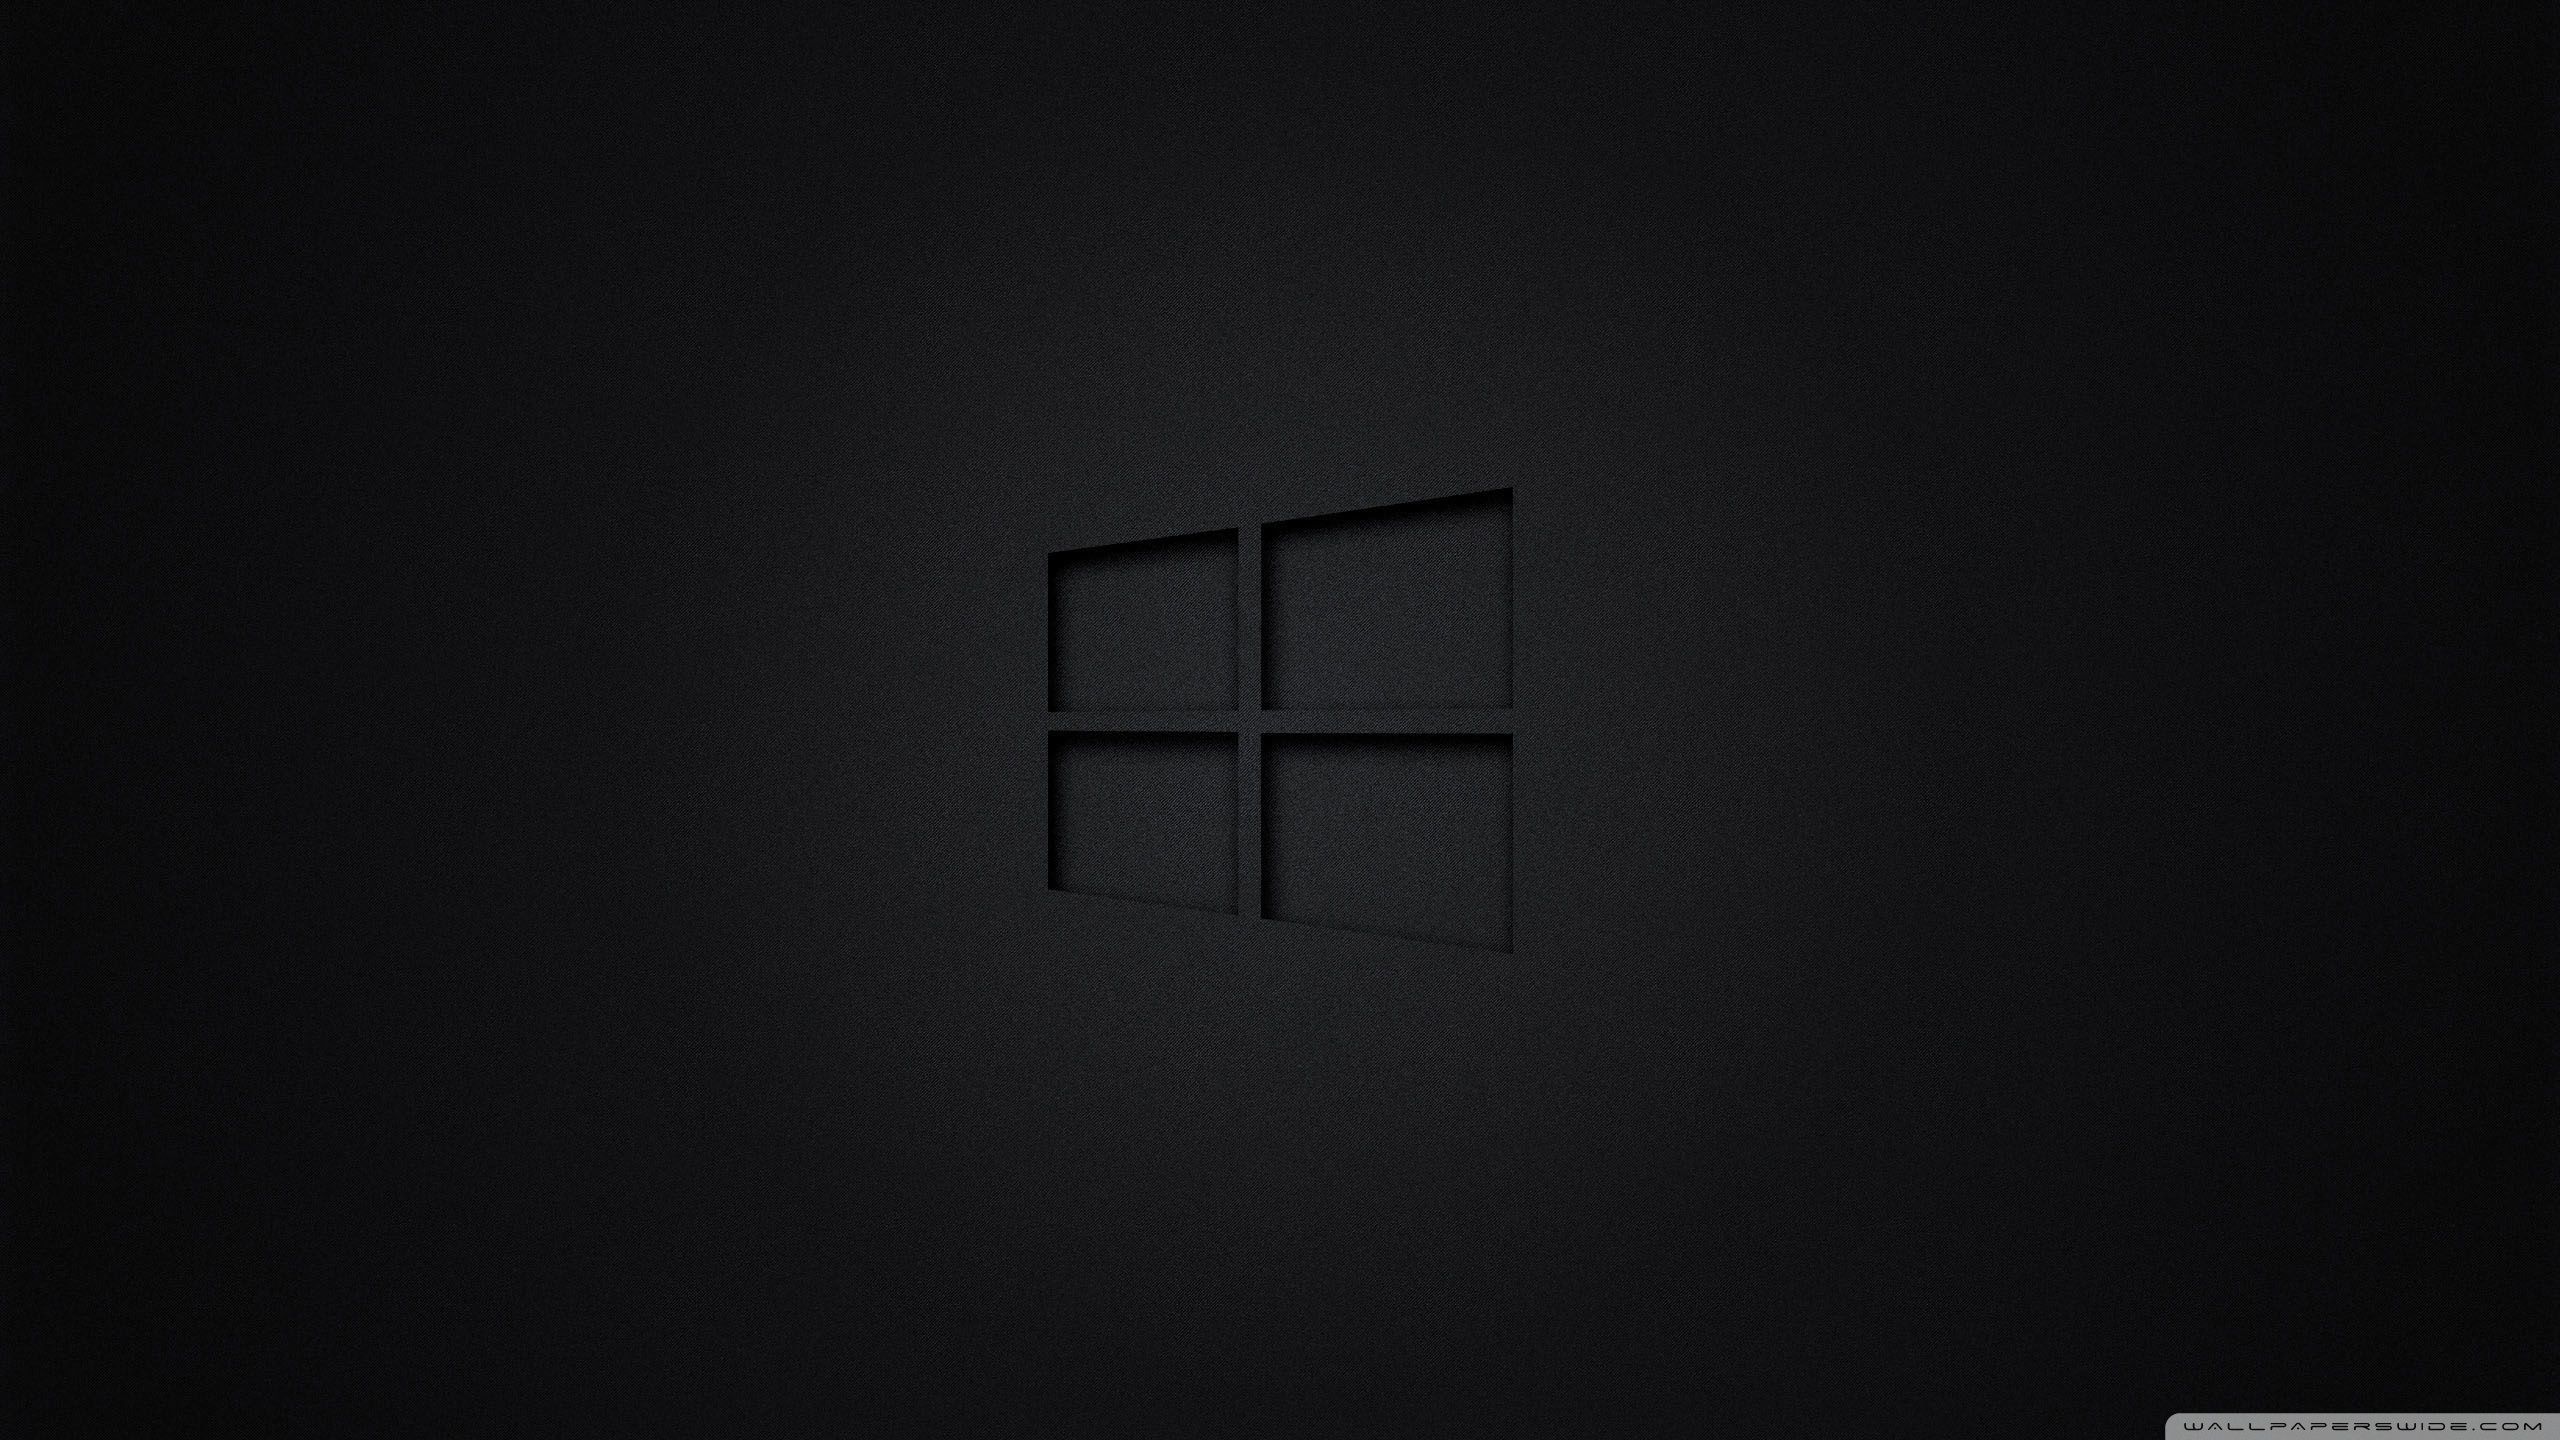 4k Wallpaper Windows 10 Black - KibrisPDR